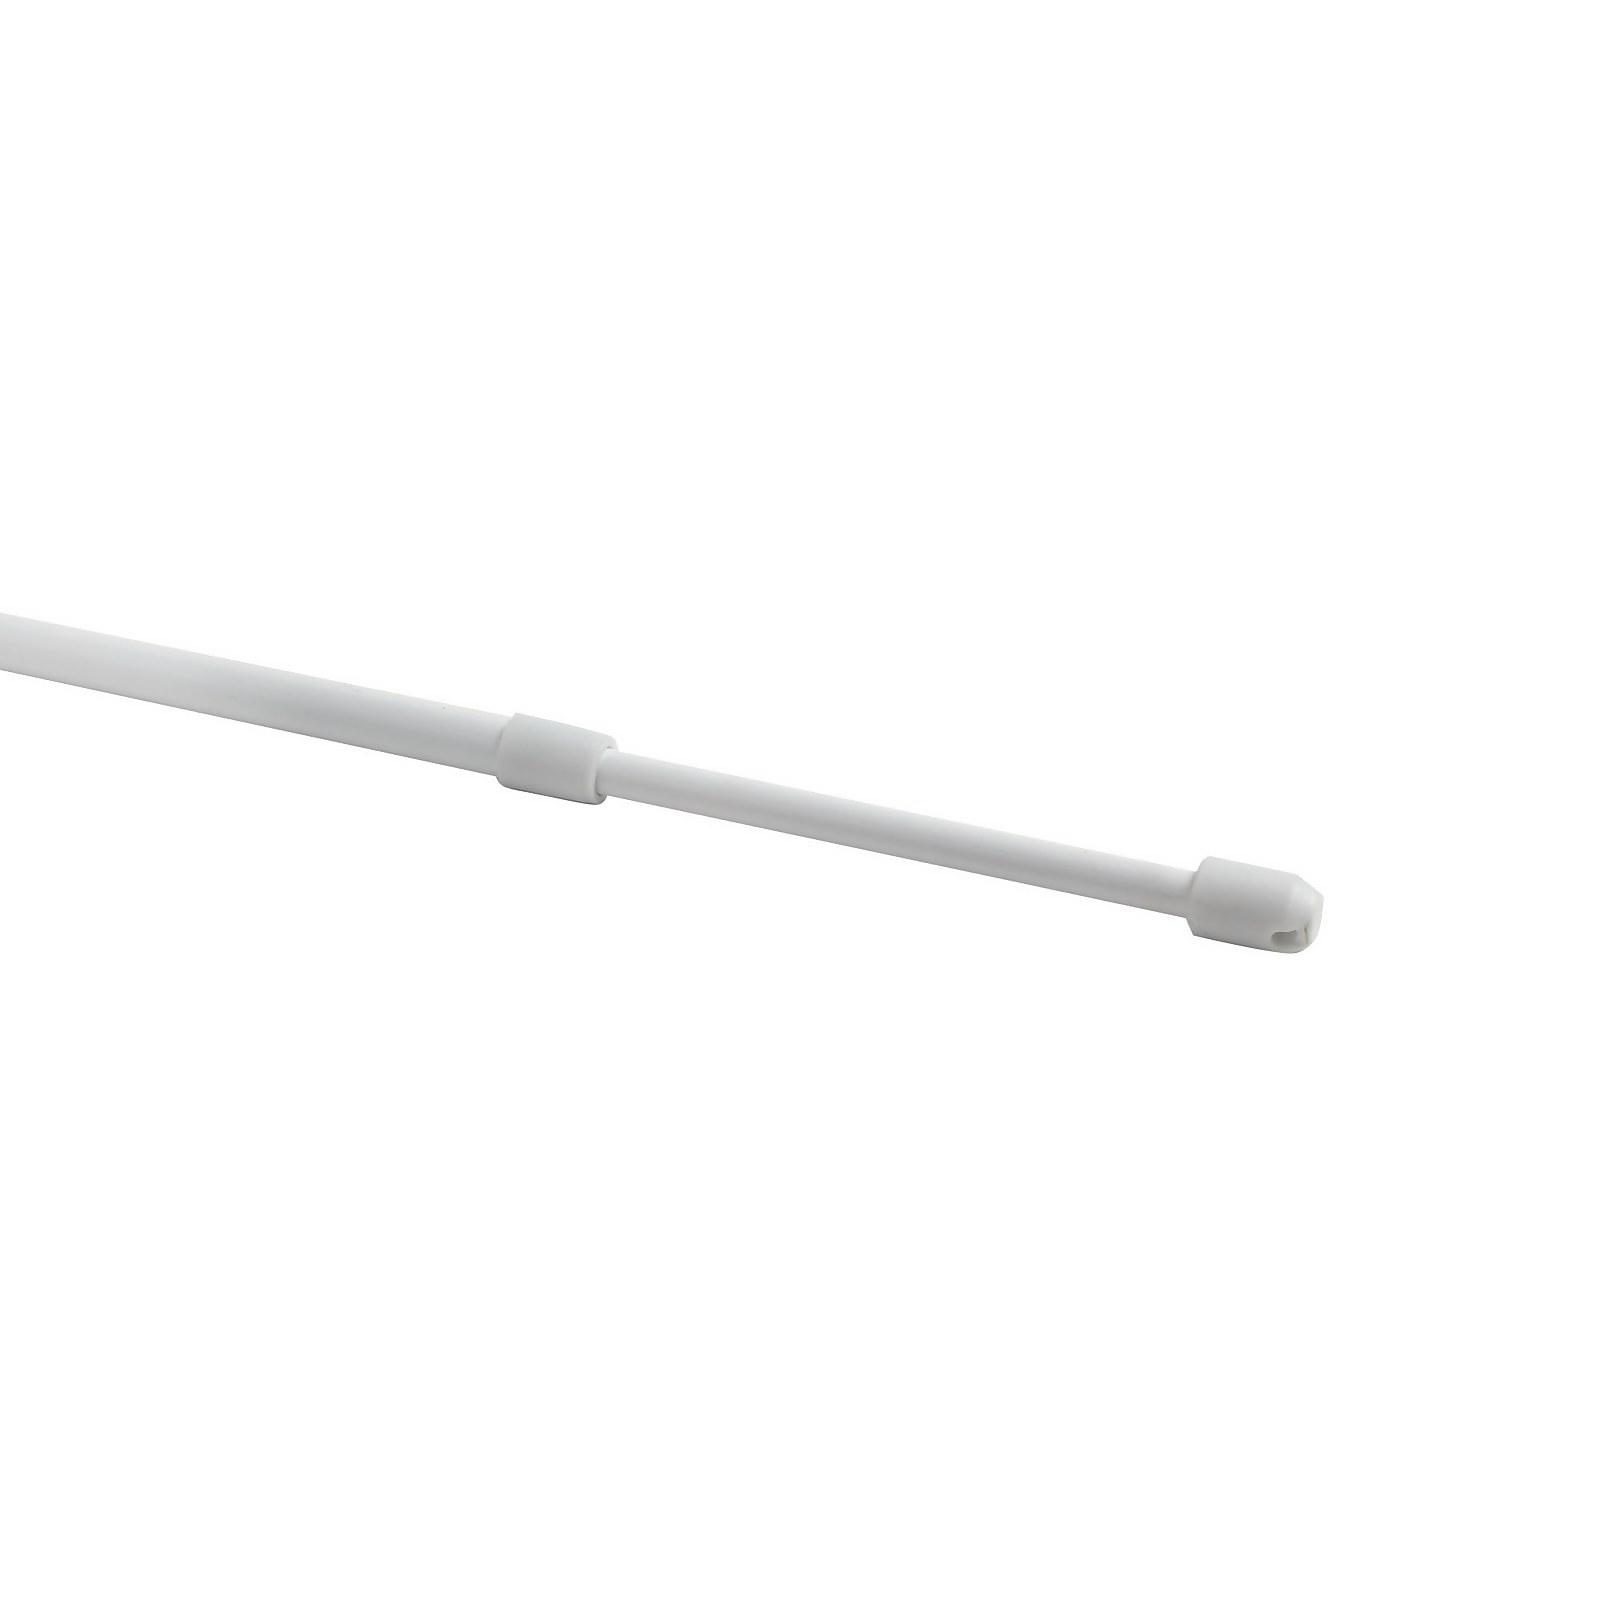 Lightweight Metal Extendable Net Curtain Rod - 80-120cm - White